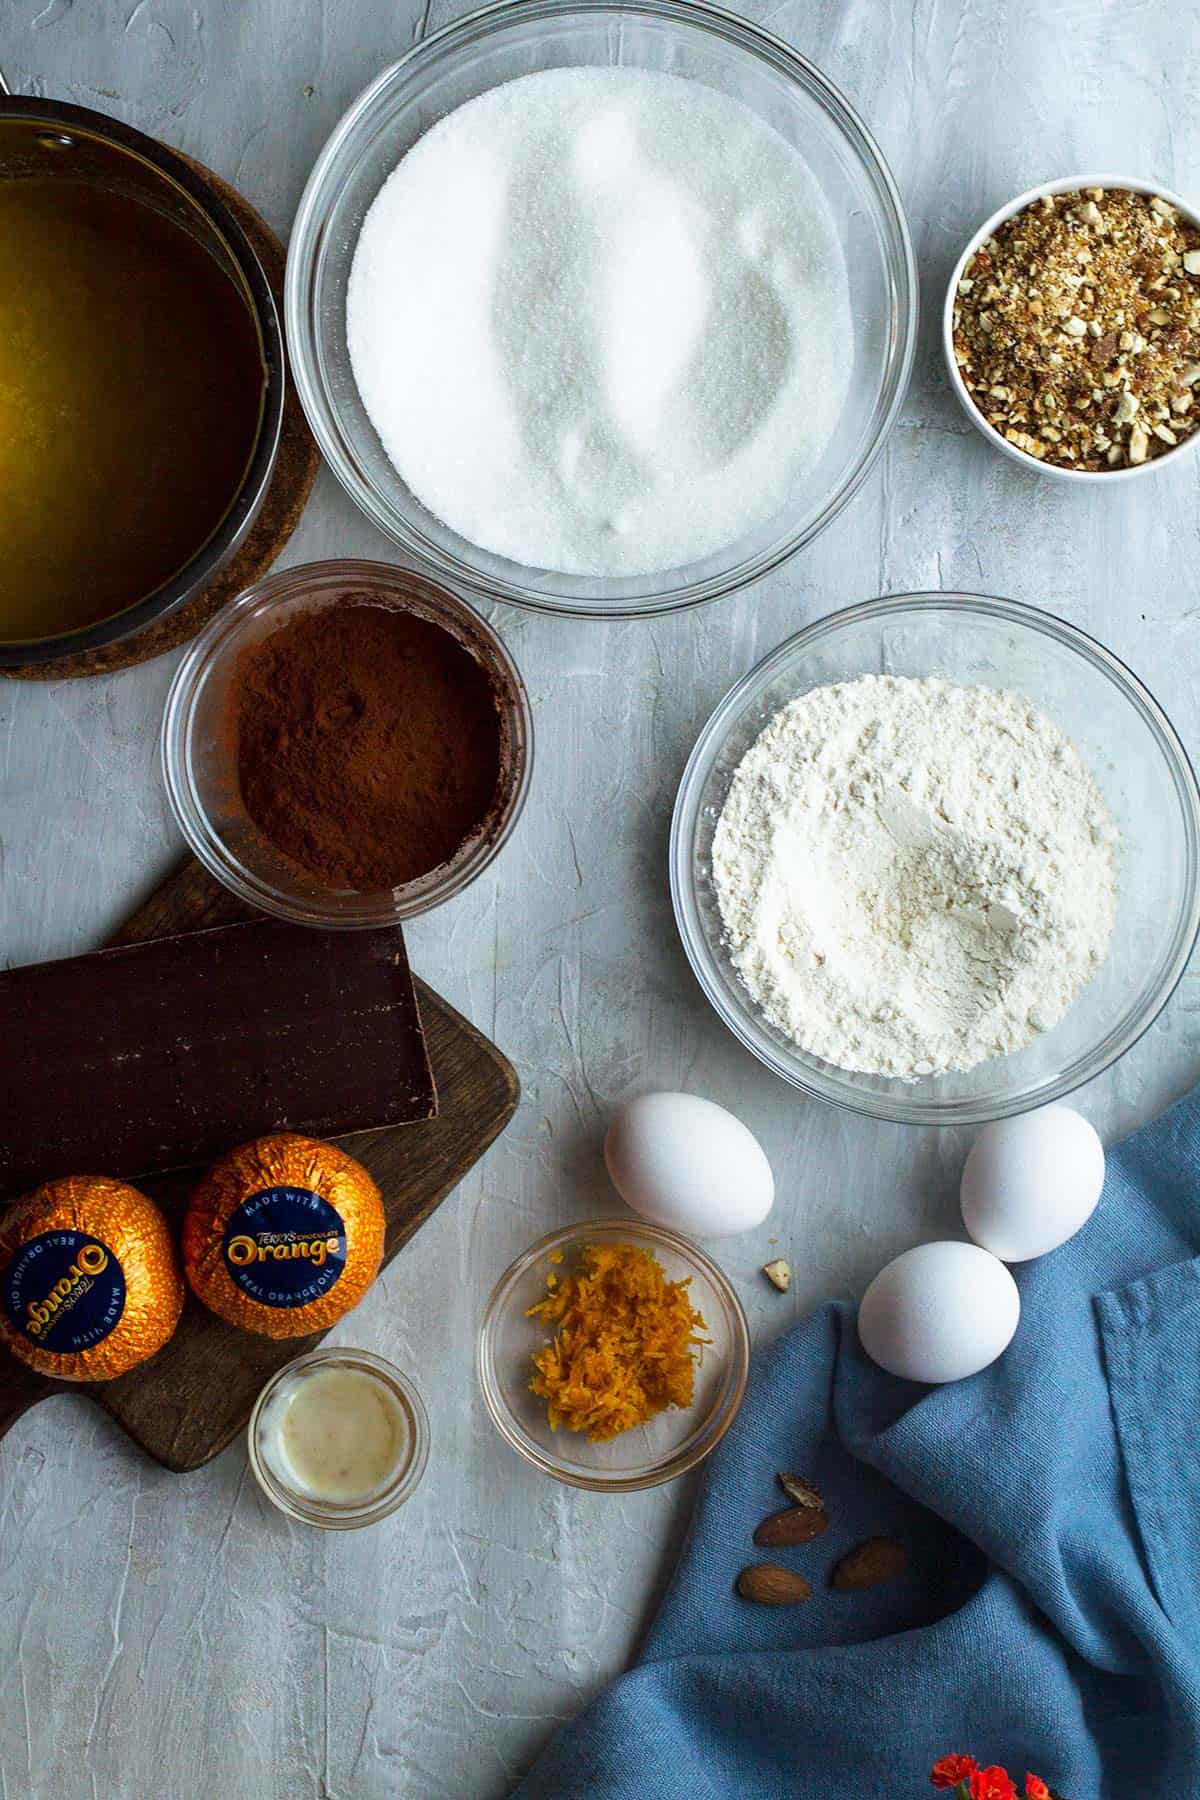 Ingredients to make orange brownies.